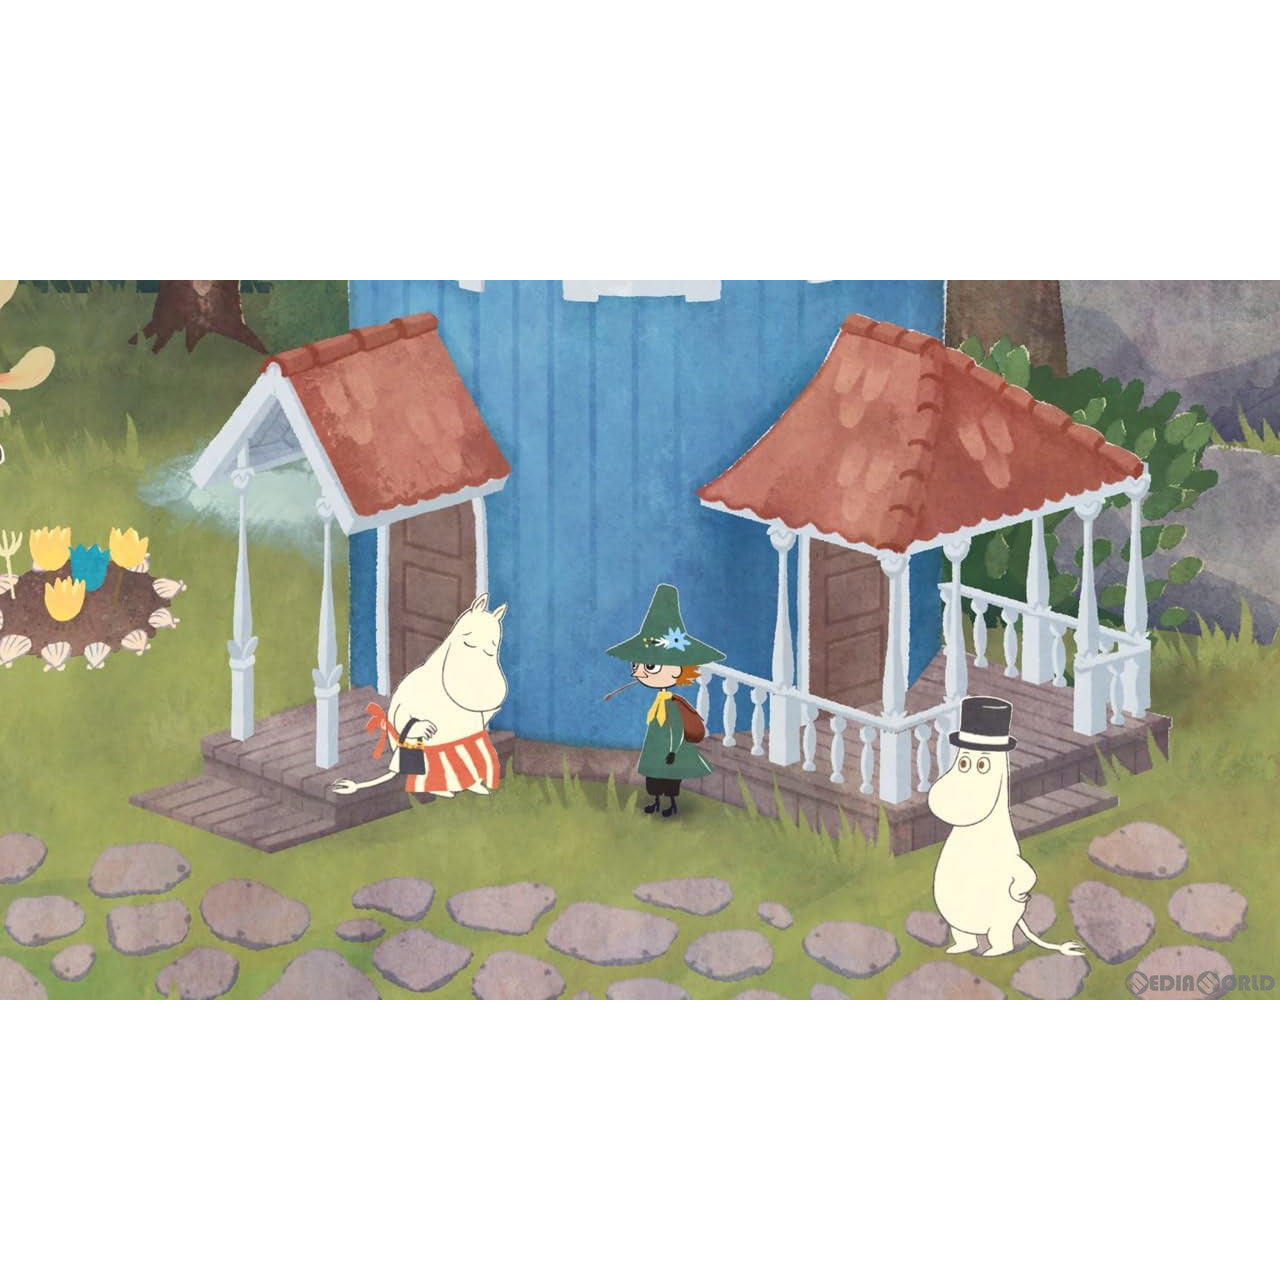 【予約前日出荷】[Switch]スナフキン:ムーミン谷のメロディ(Snufkin: Melody of Moominvalley) 通常版(20240613)